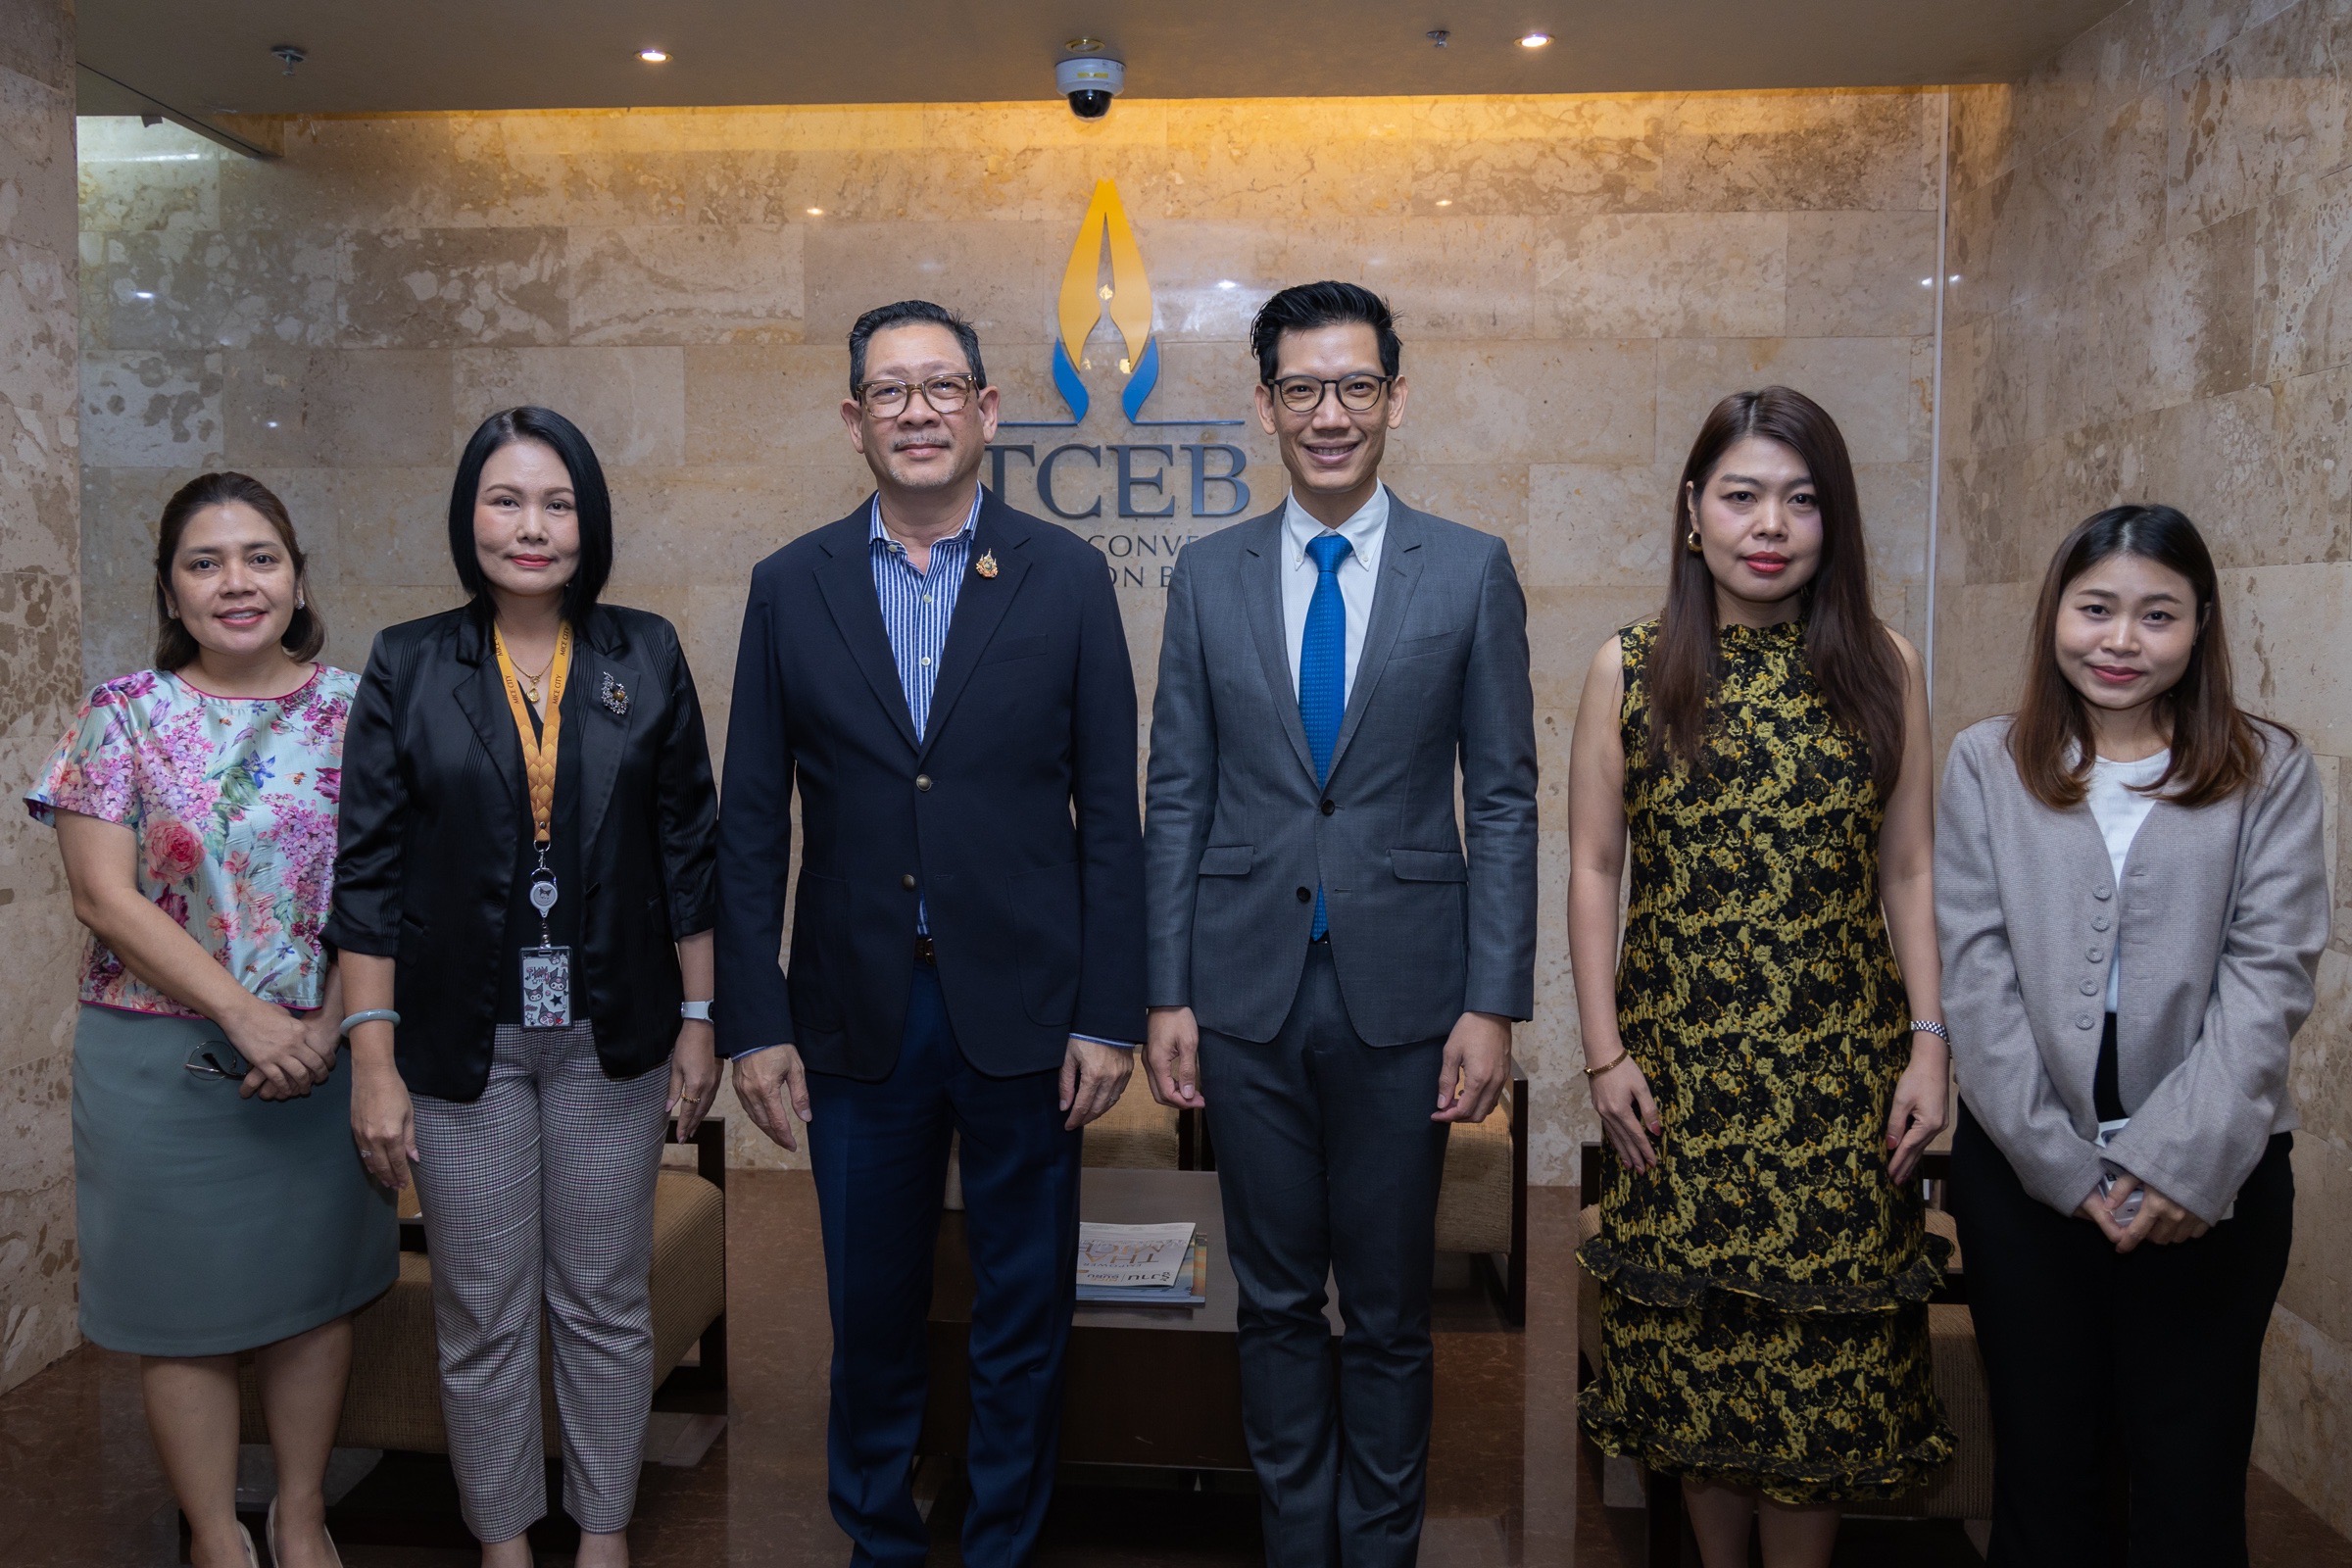 EXIM BANK พบปะหารือสำนักงานส่งเสริมการจัดประชุมและนิทรรศการ (องค์การมหาชน) สนับสนุนประเทศไทยสู่ศูนย์กลางการจัดงานระดับโลก